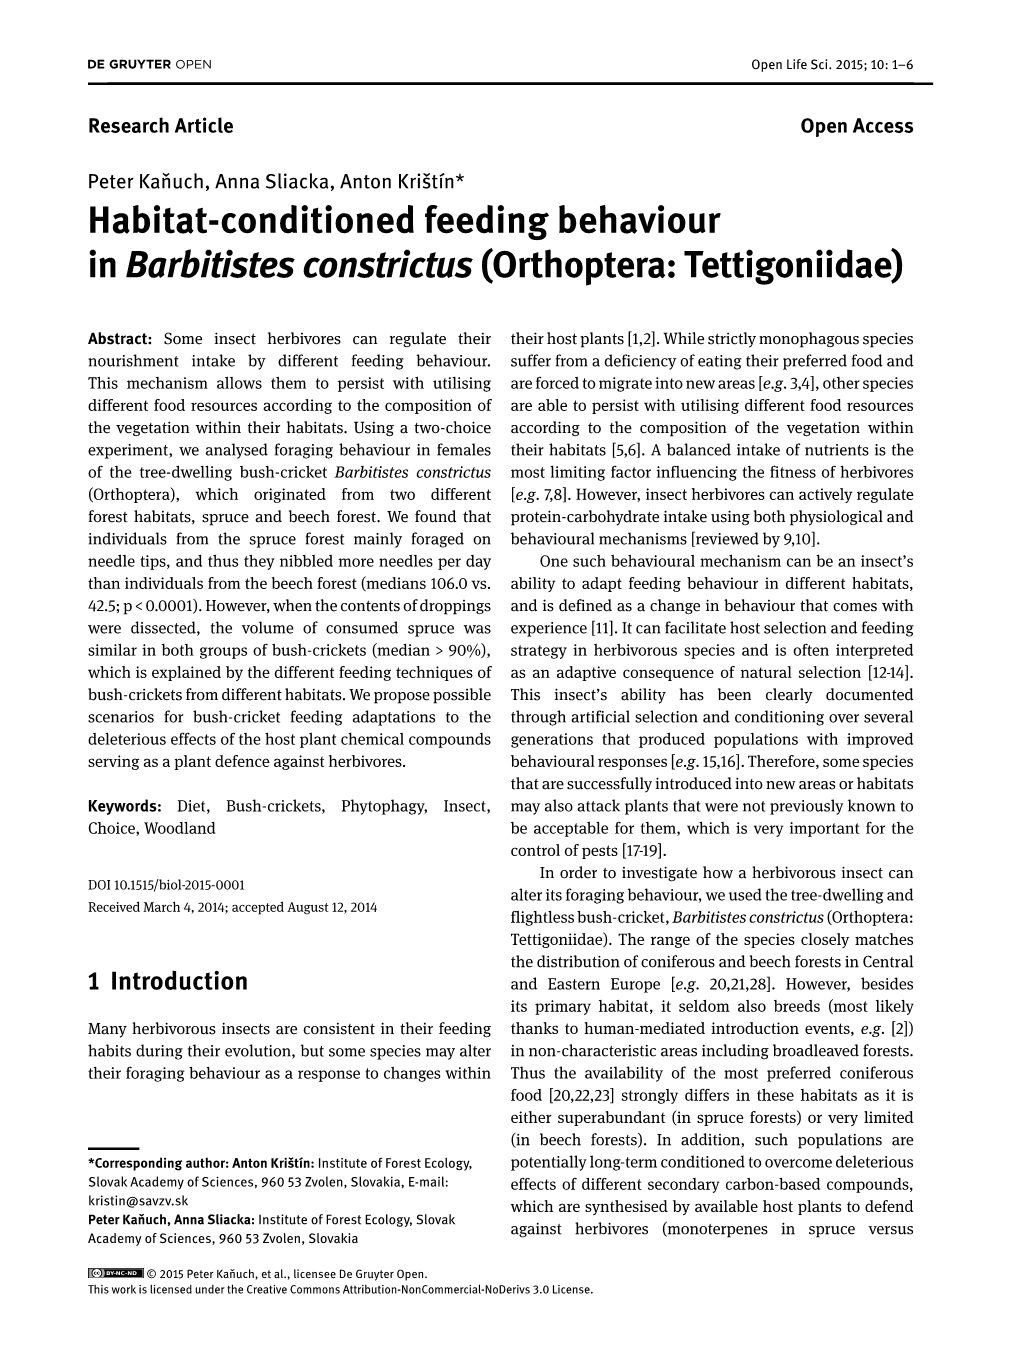 Habitat-Conditioned Feeding Behaviour in Barbitistes Constrictus(Orthoptera: Tettigoniidae)